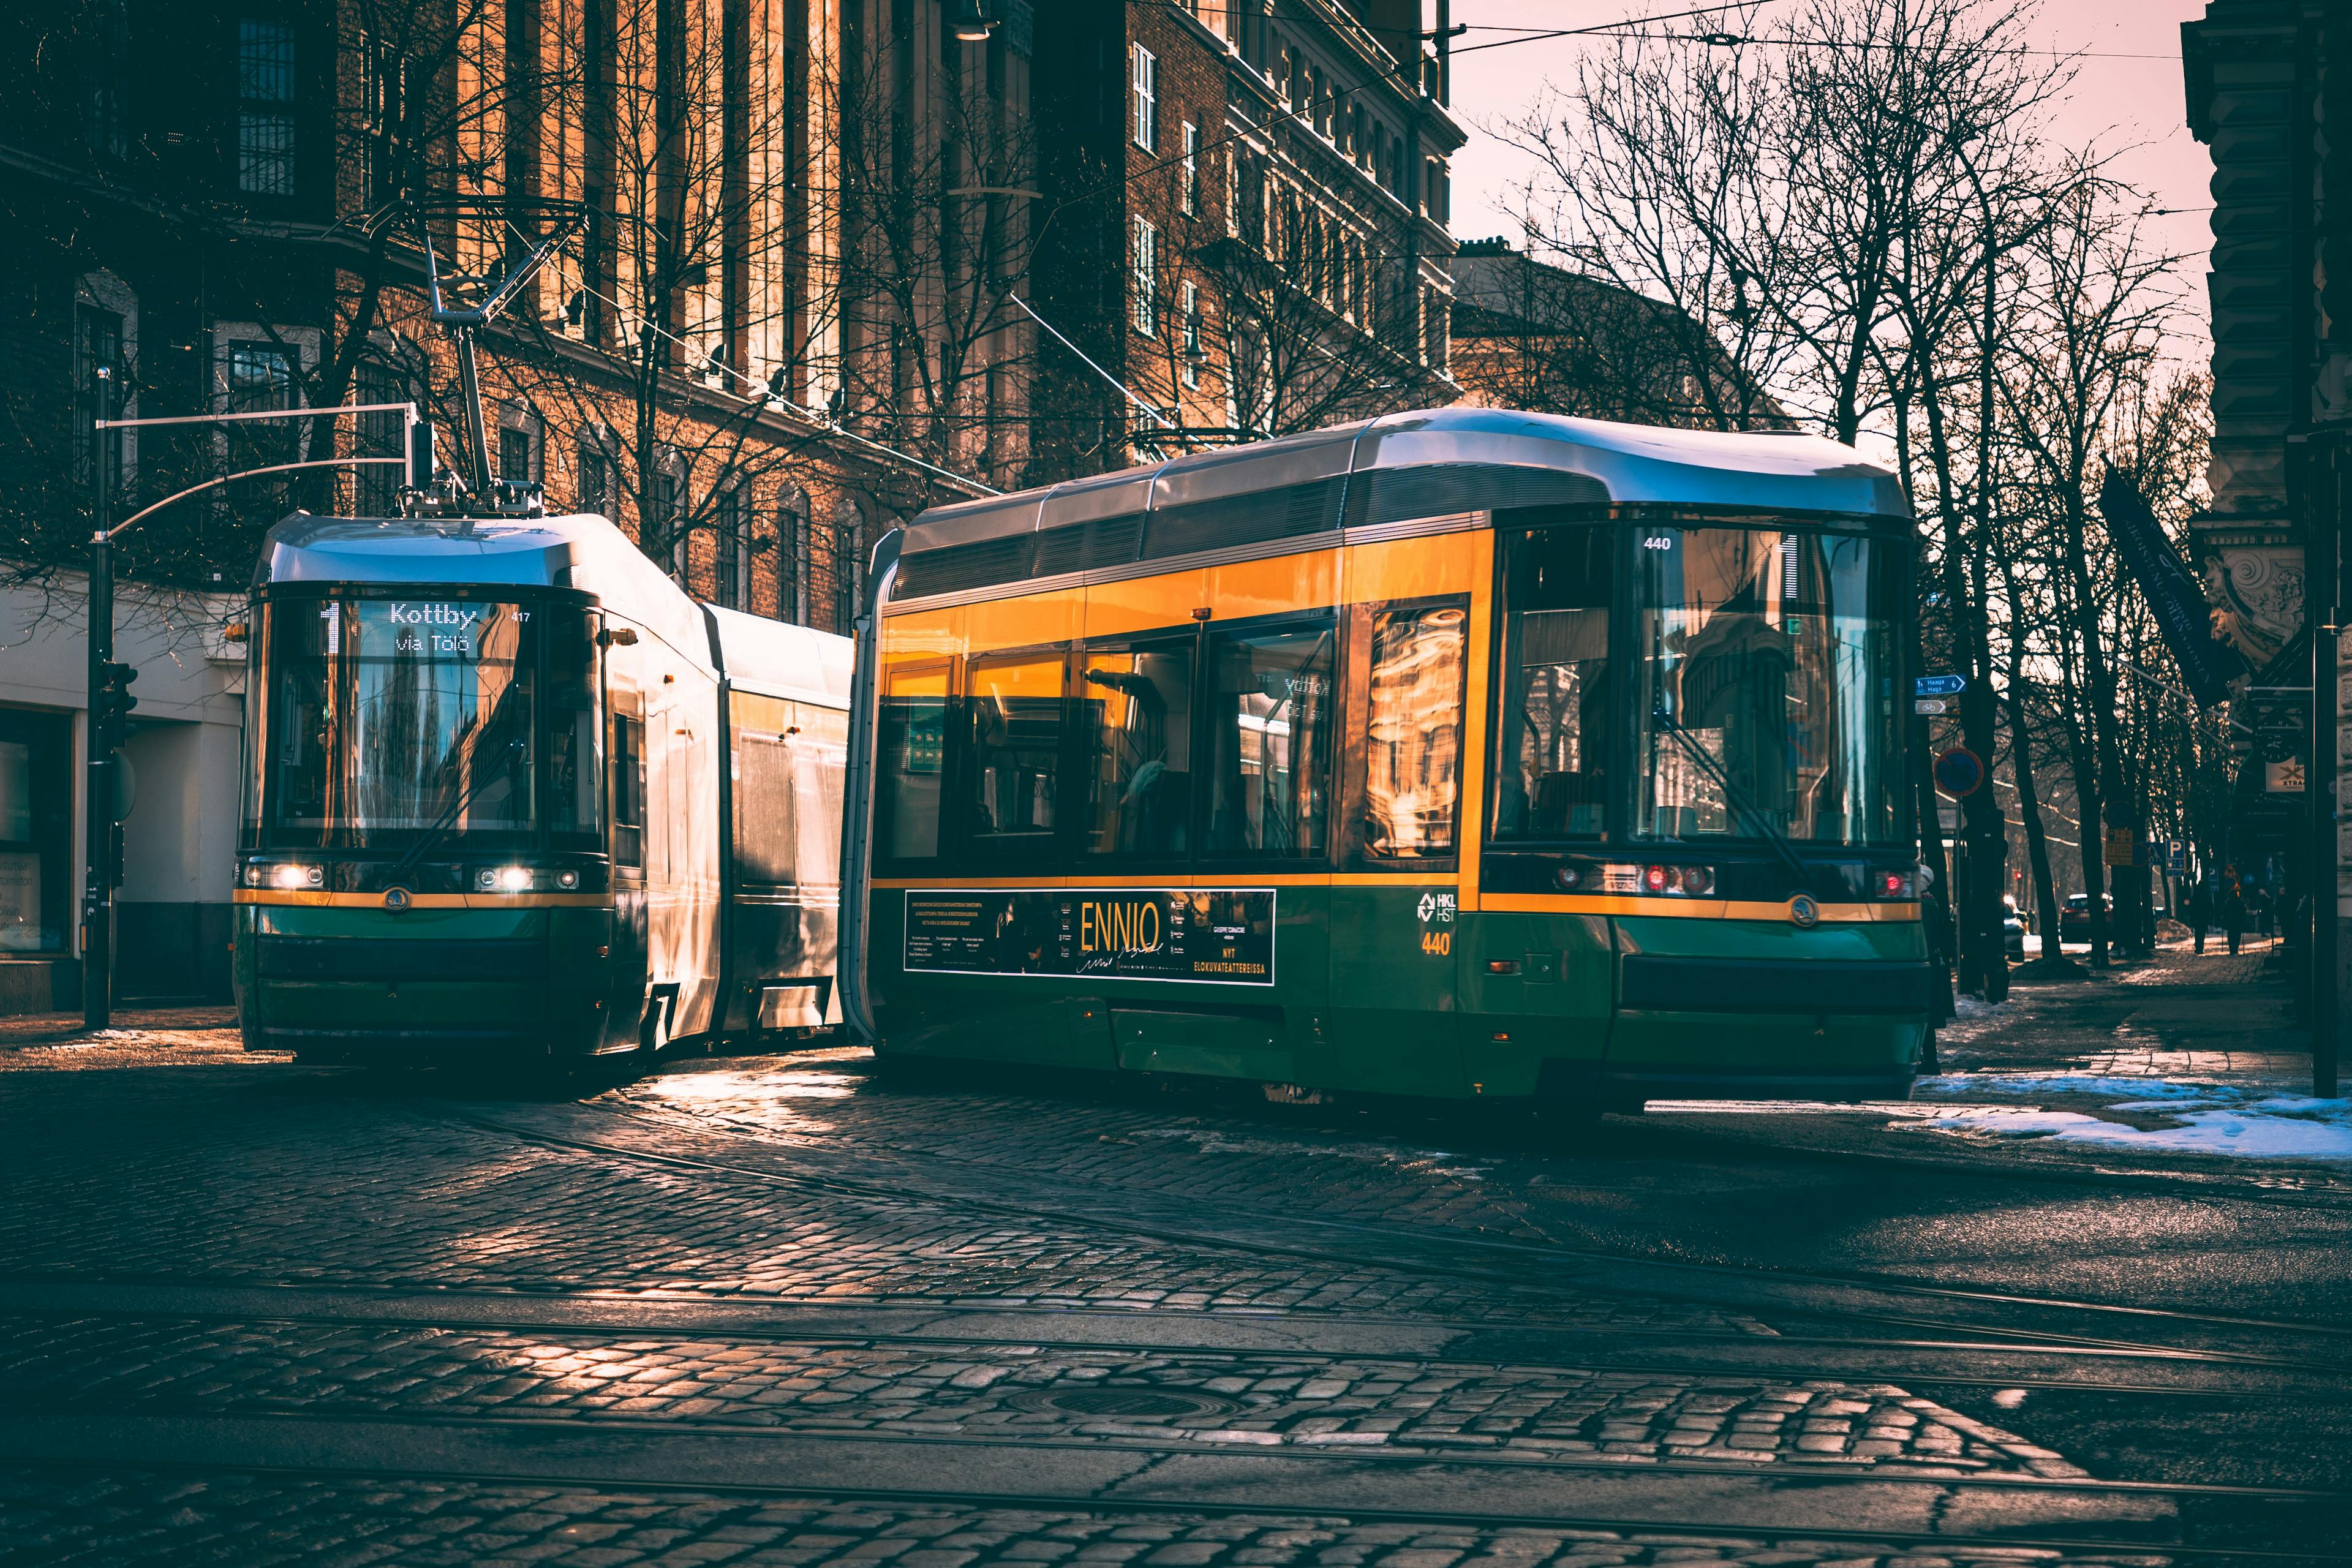 Tram in Helsinki